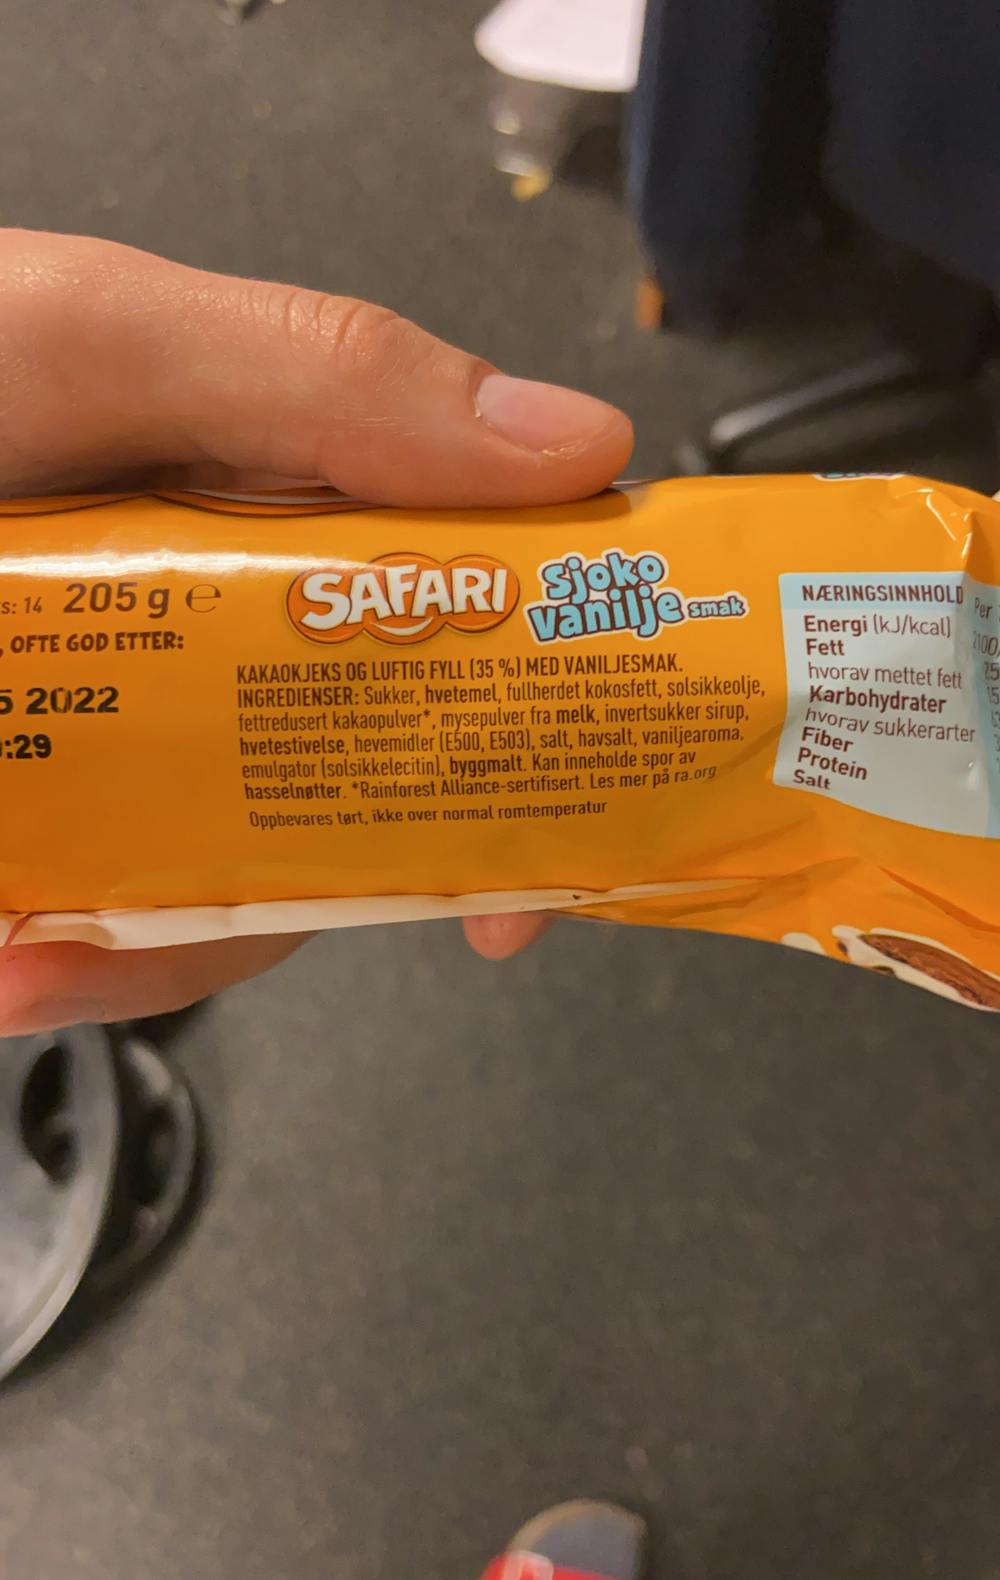 Ingredienslisten til Safari, sjoko vanilje smak, Sætre